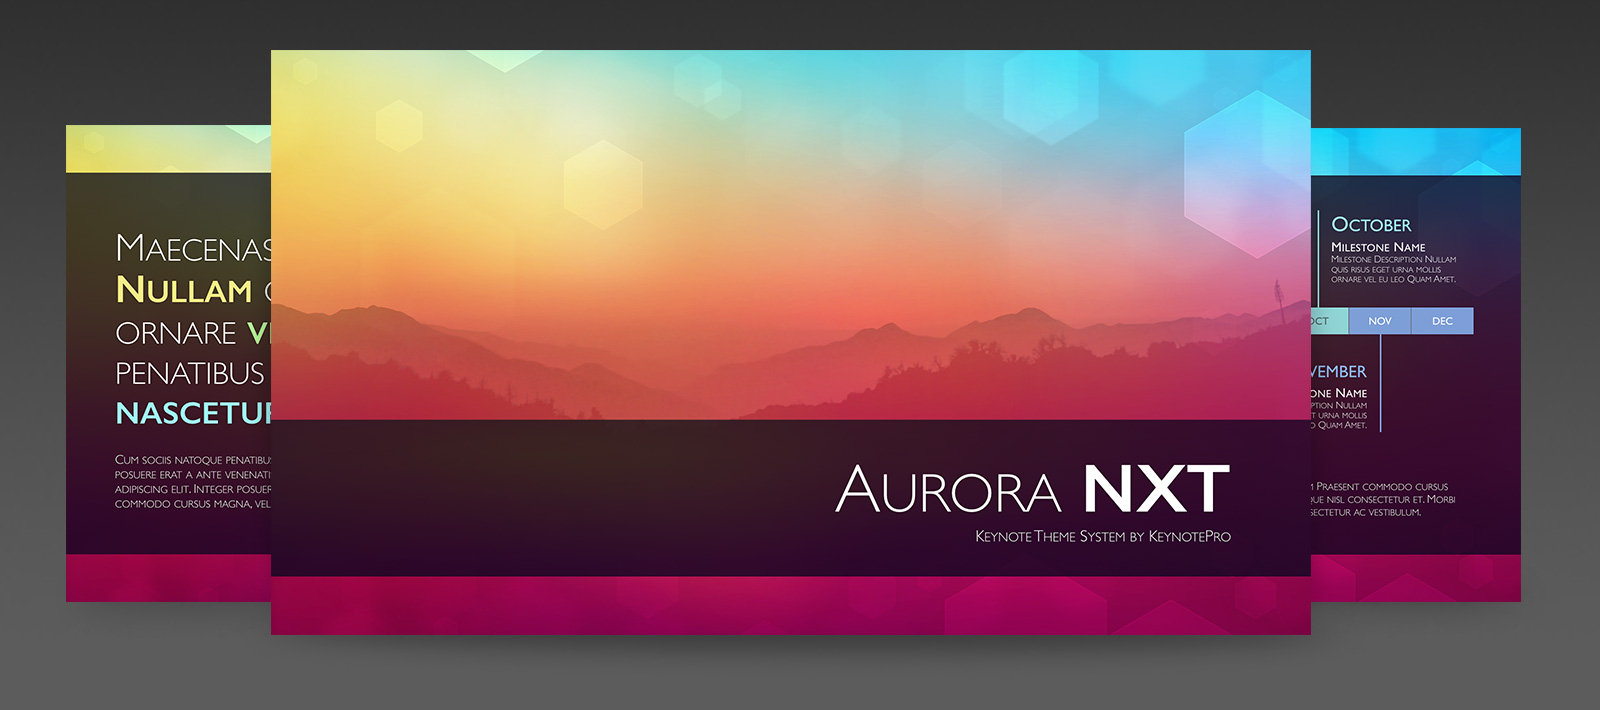 Aurora　Themes:　NXT　KeynotePro:　Keynote